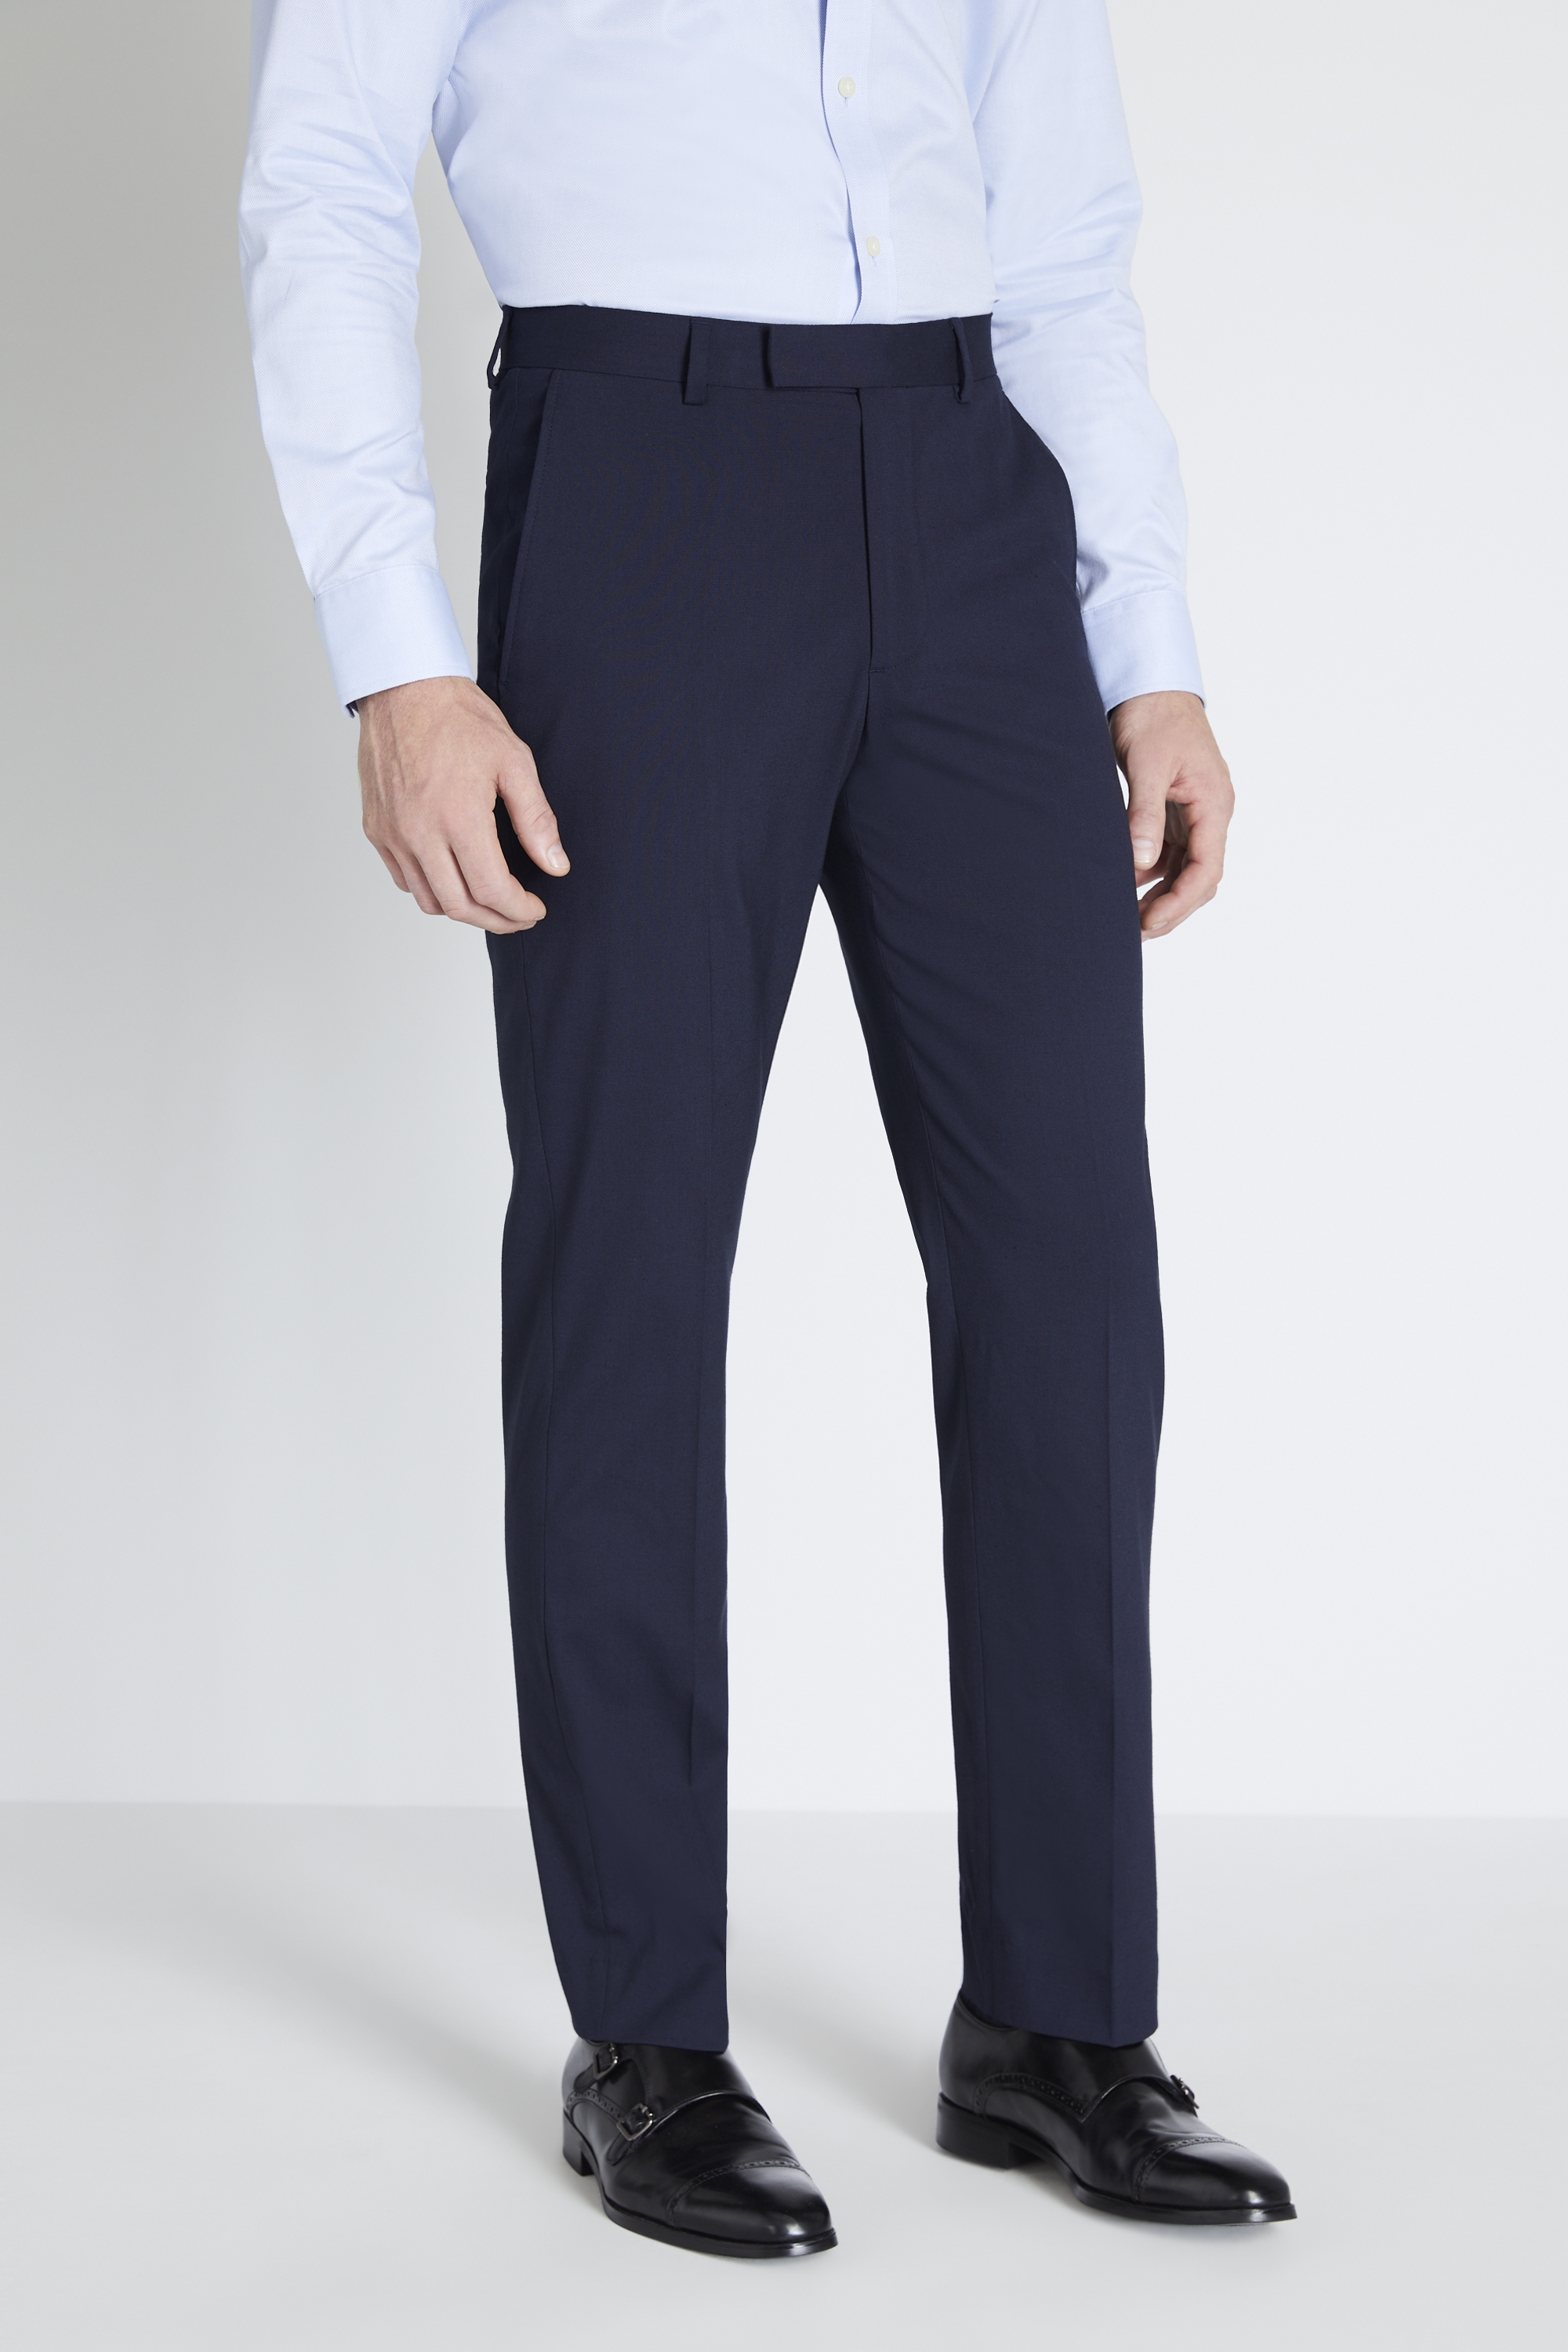 Regular Fit Blue Sharkskin Trousers | Buy Online at Moss